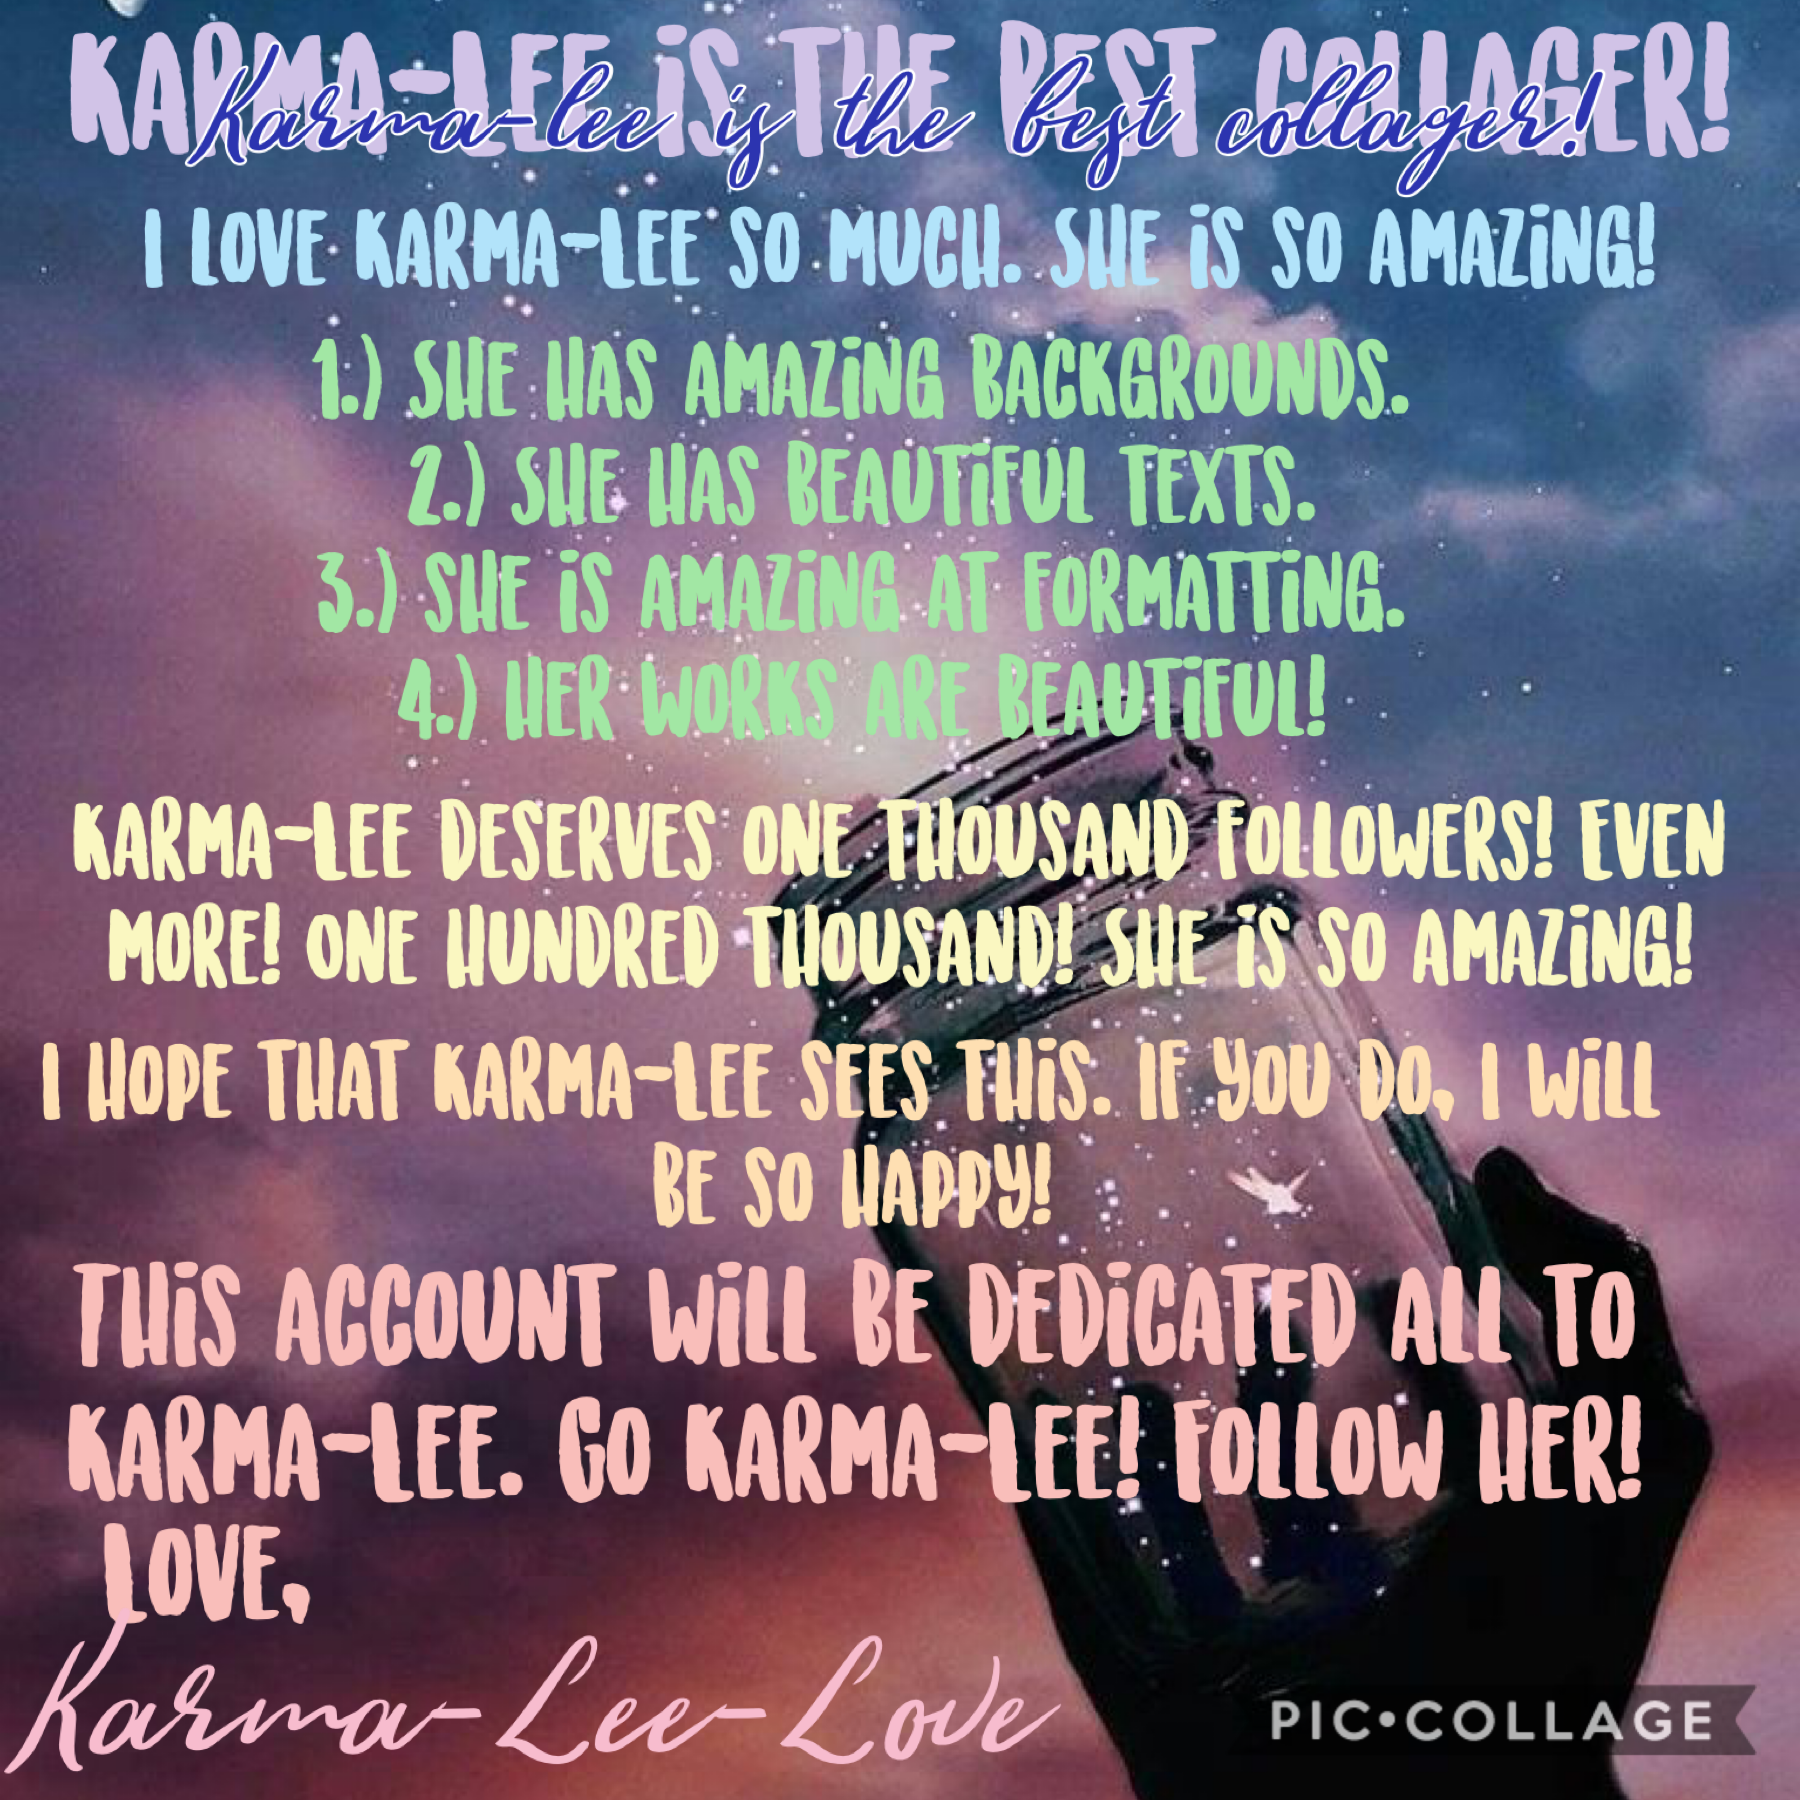 I love you Karma-Lee!! 